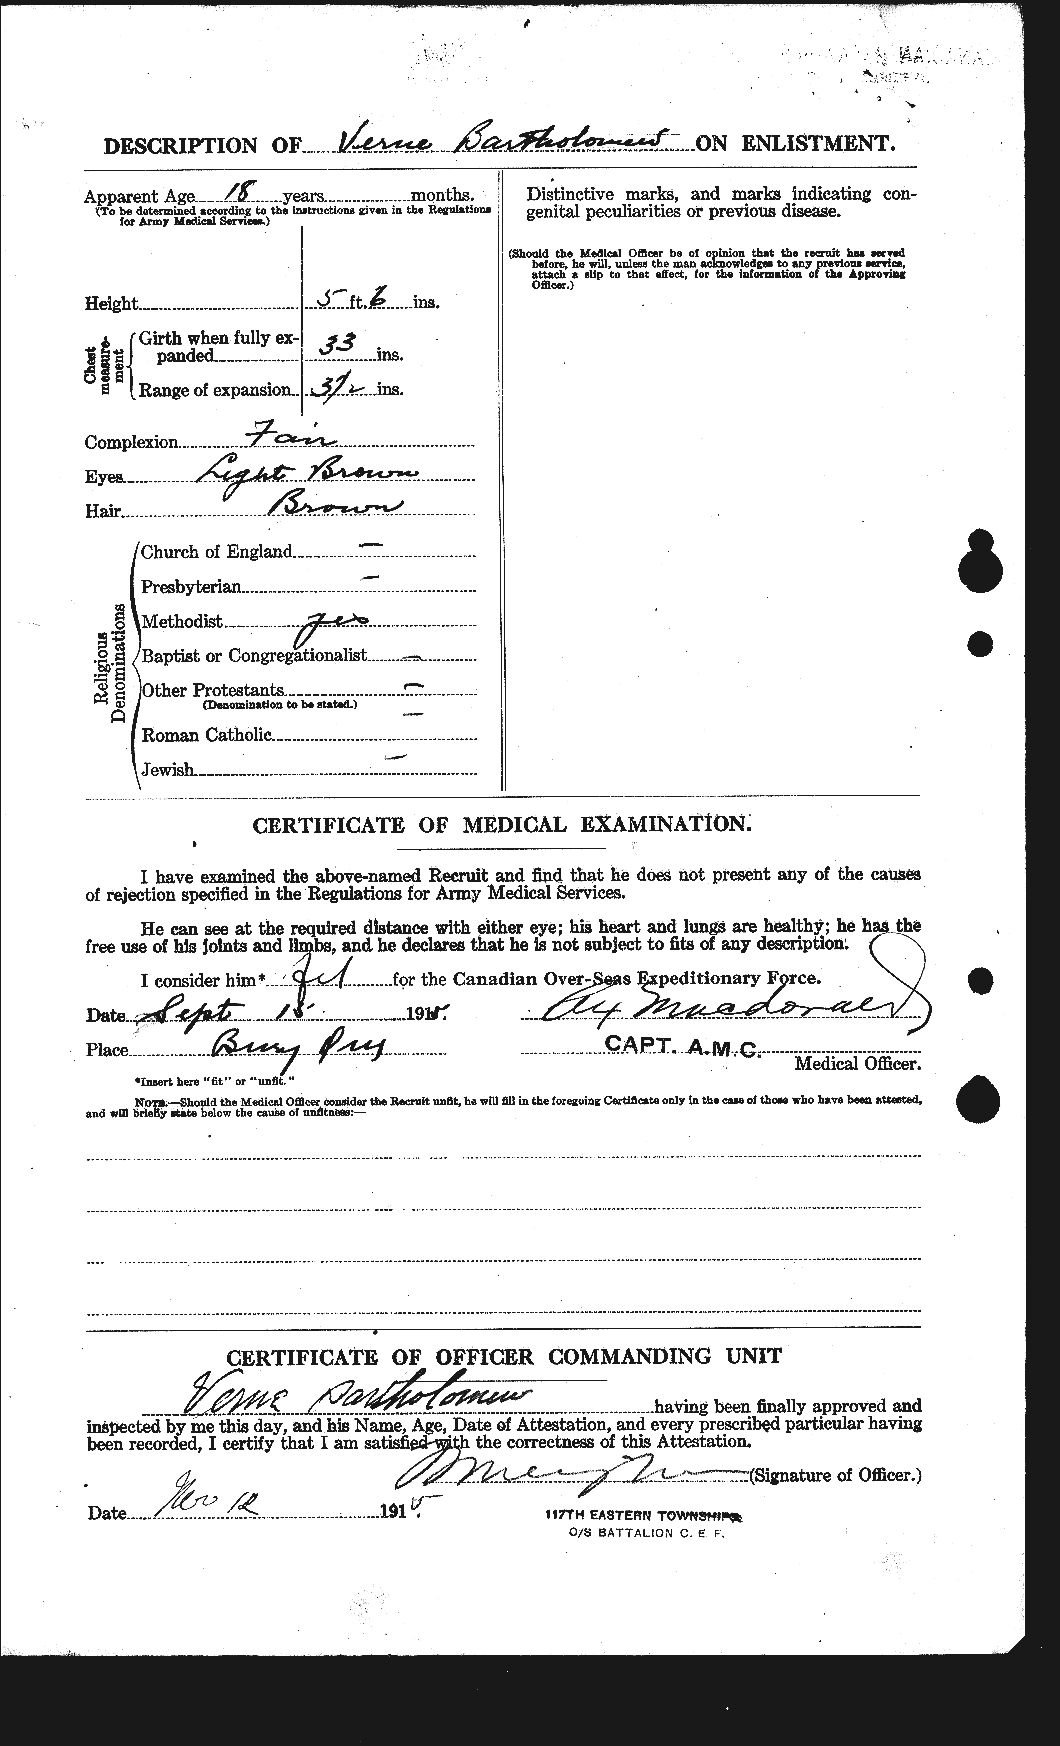 Dossiers du Personnel de la Première Guerre mondiale - CEC 229122b